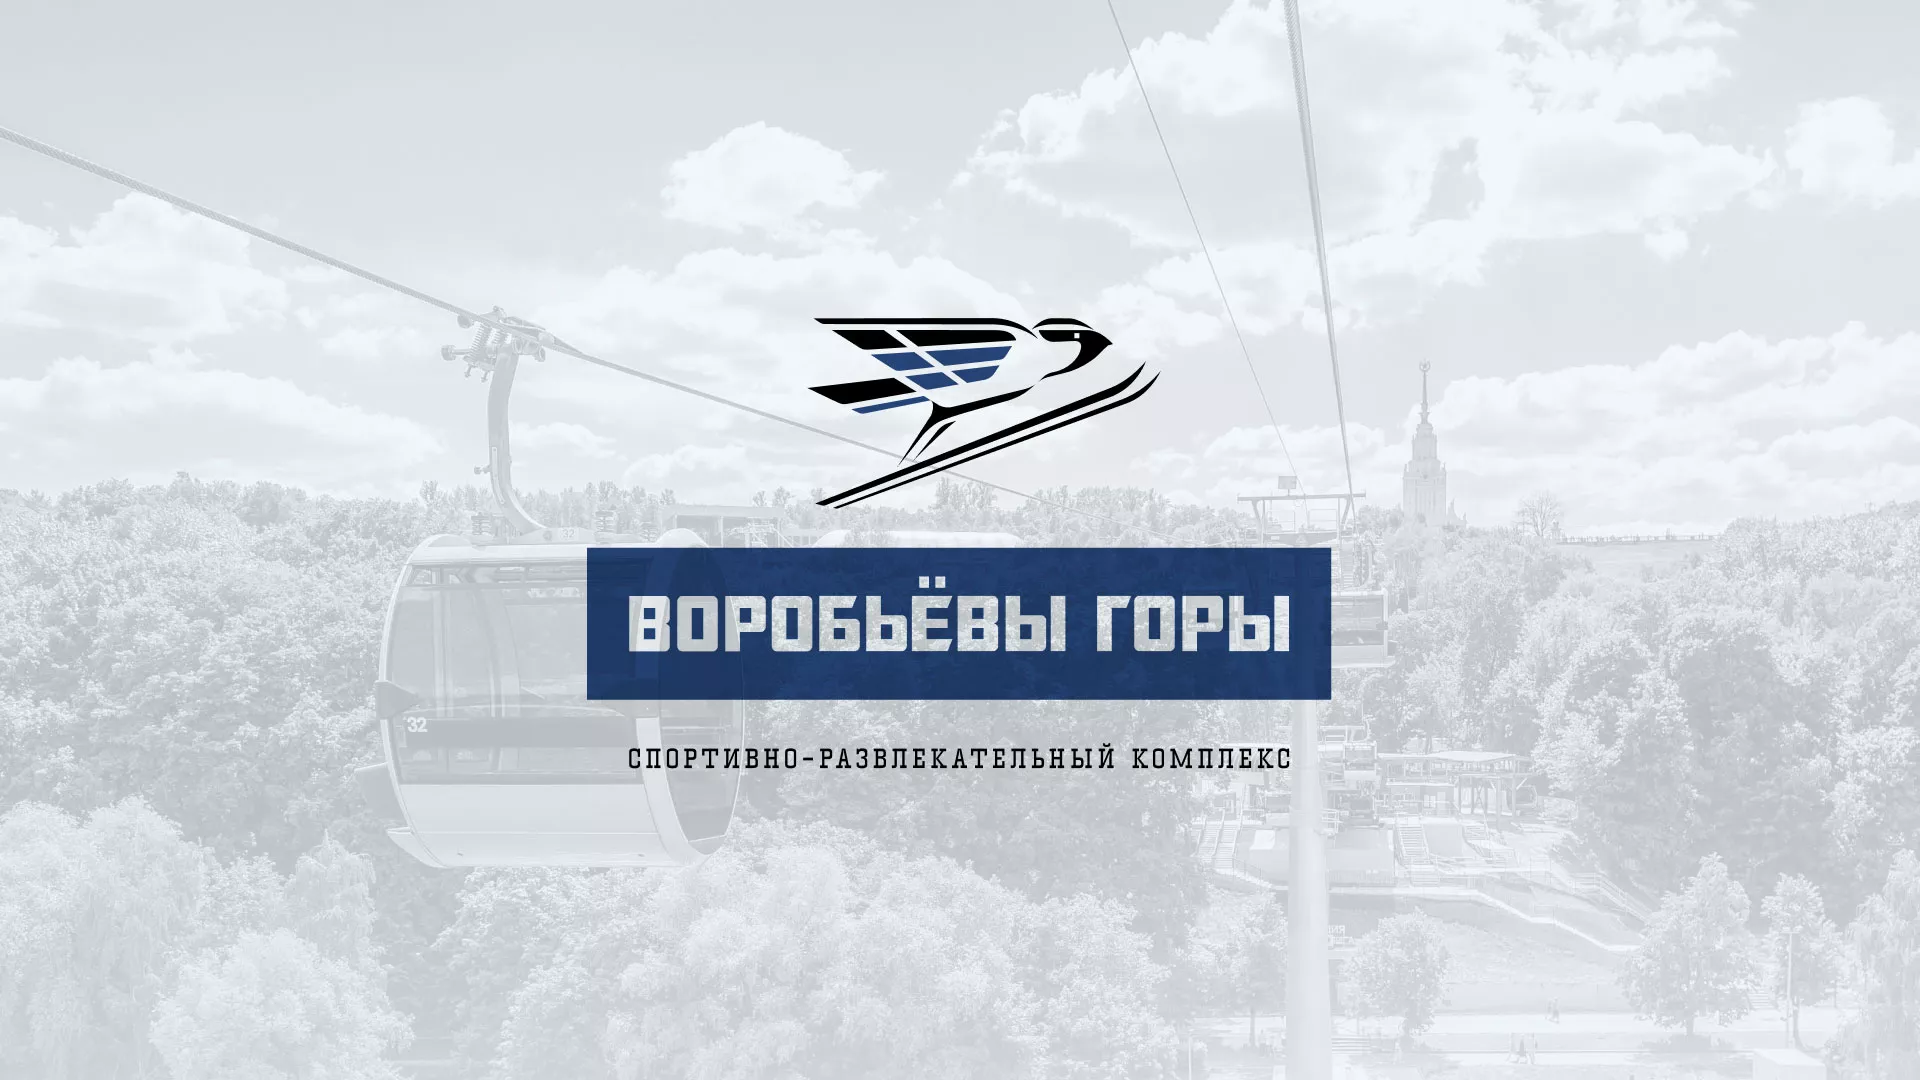 Разработка сайта в Троицке для спортивно-развлекательного комплекса «Воробьёвы горы»